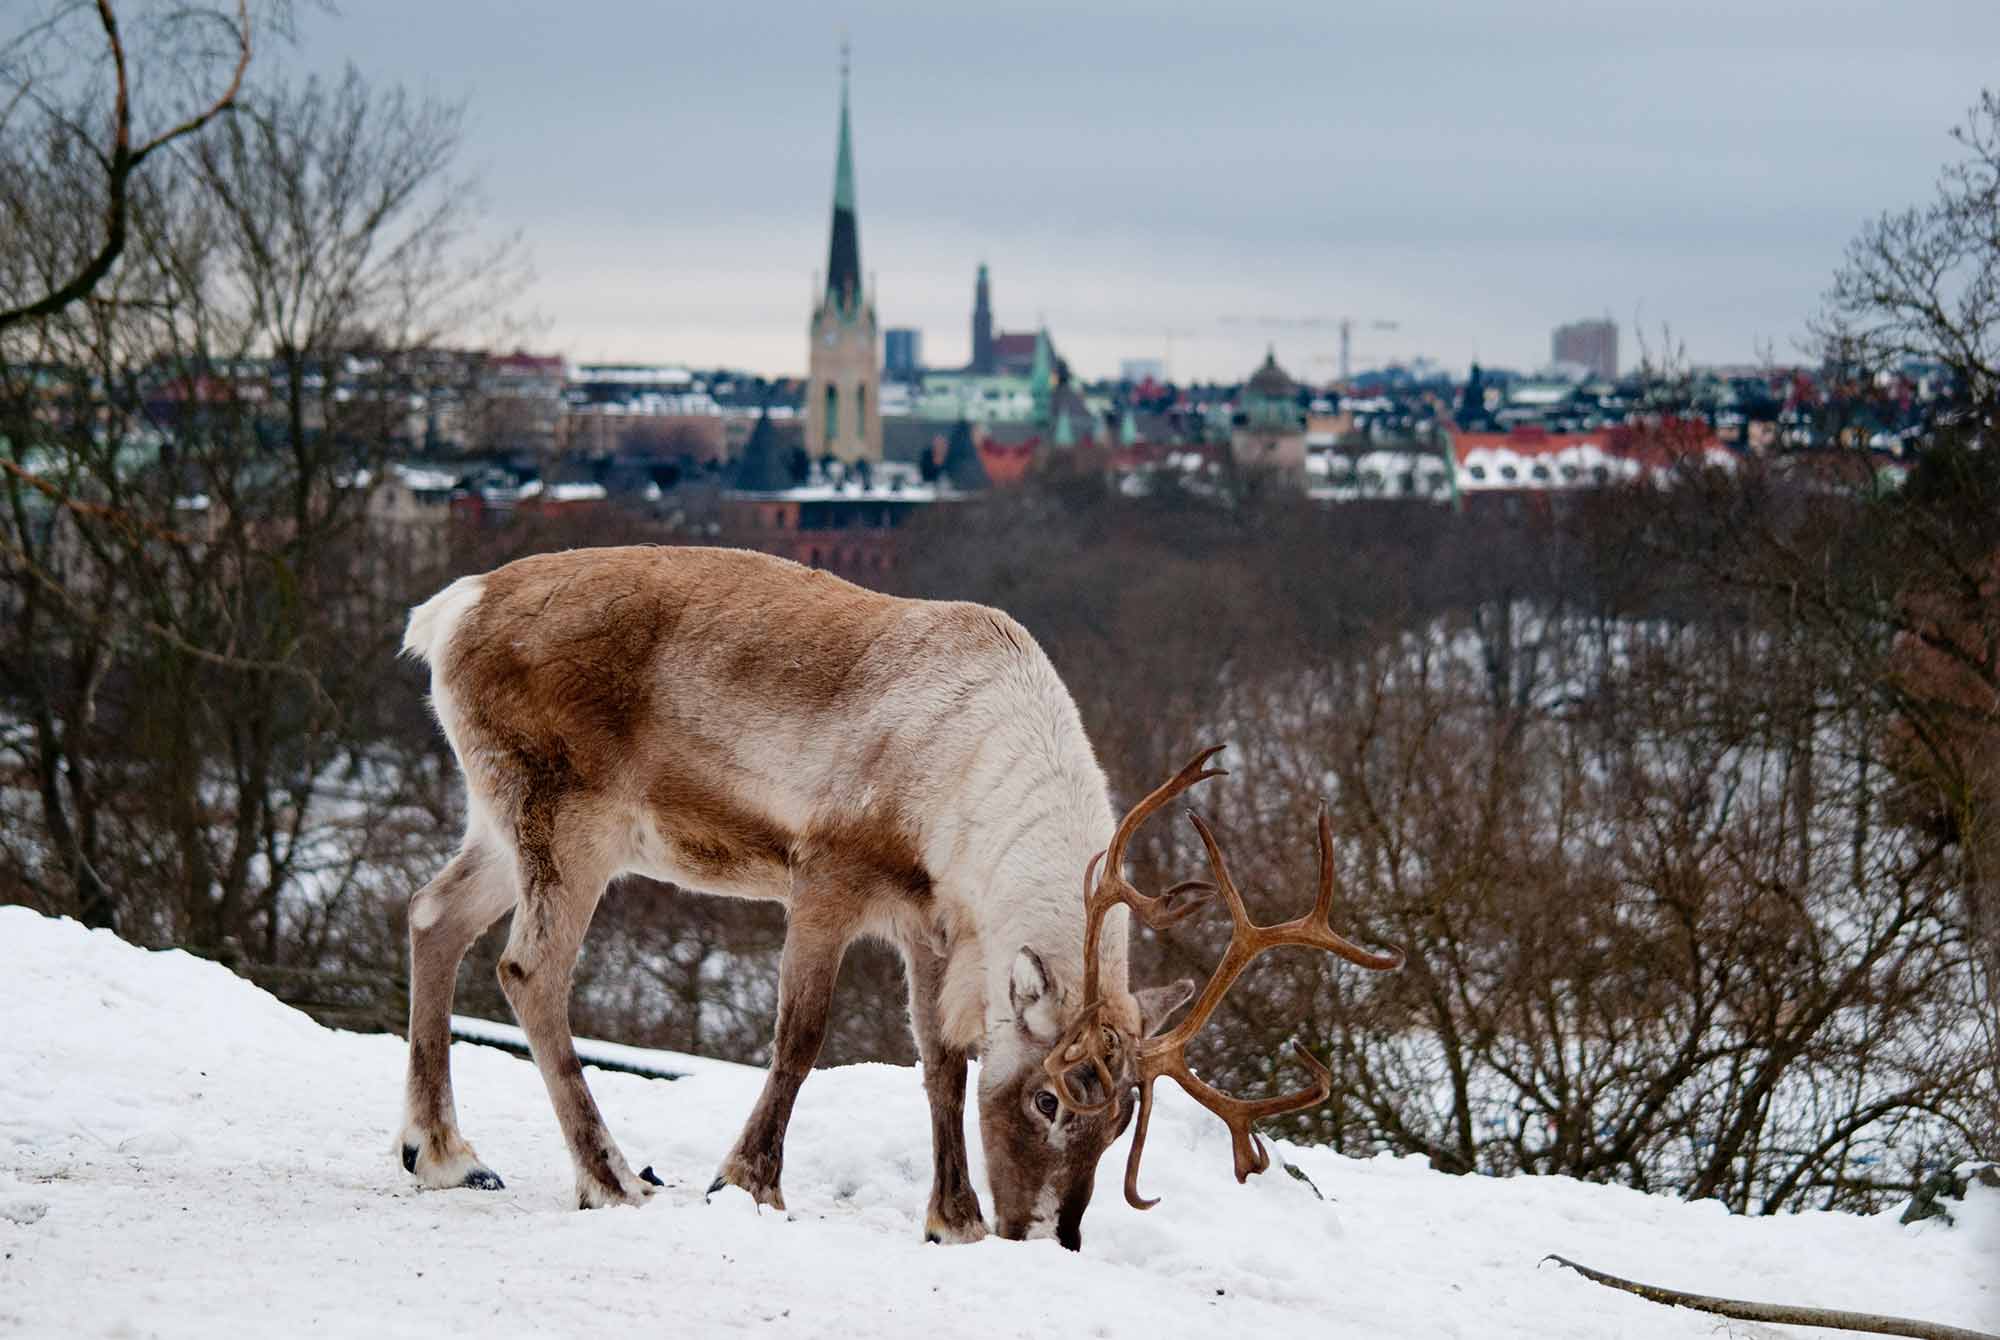 Reindeer walking in the snow in Sweden